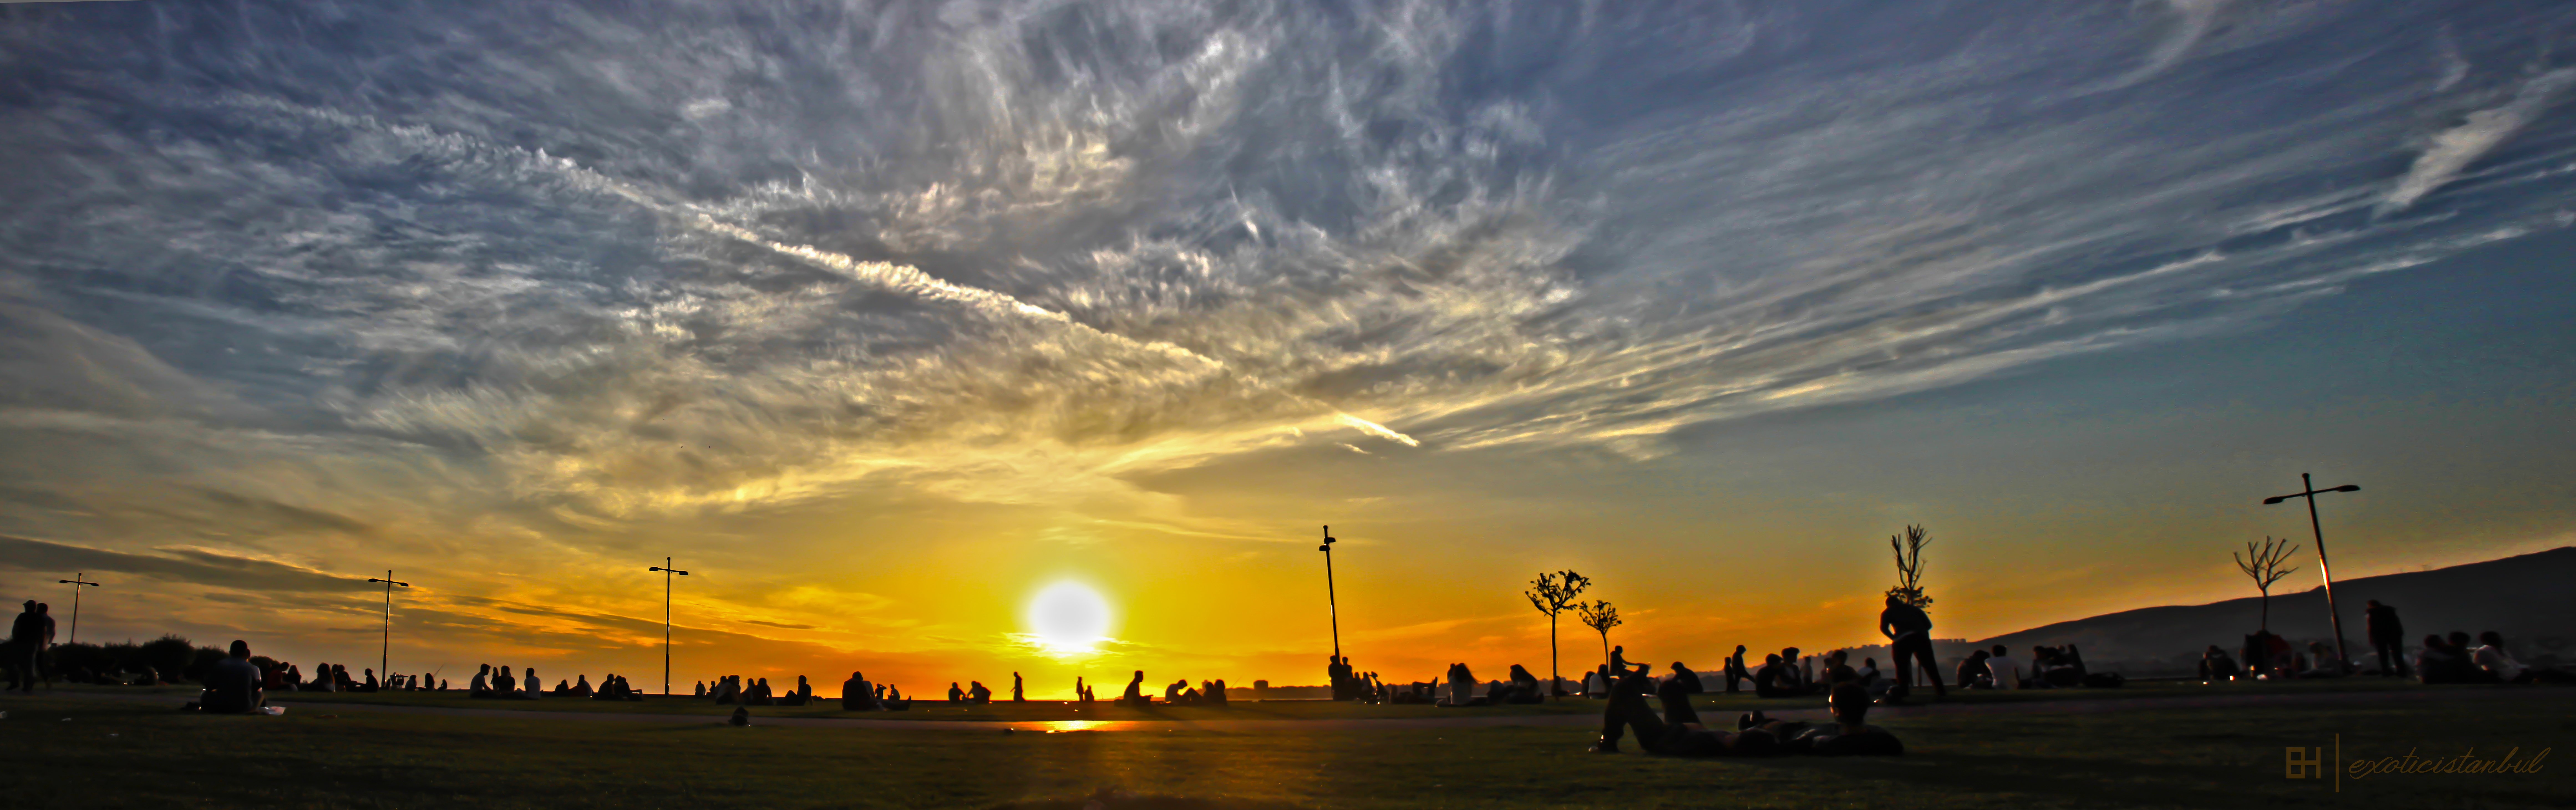 Izmir Emre Hanoglu Sky Peoples Sunset Clouds Beautiful